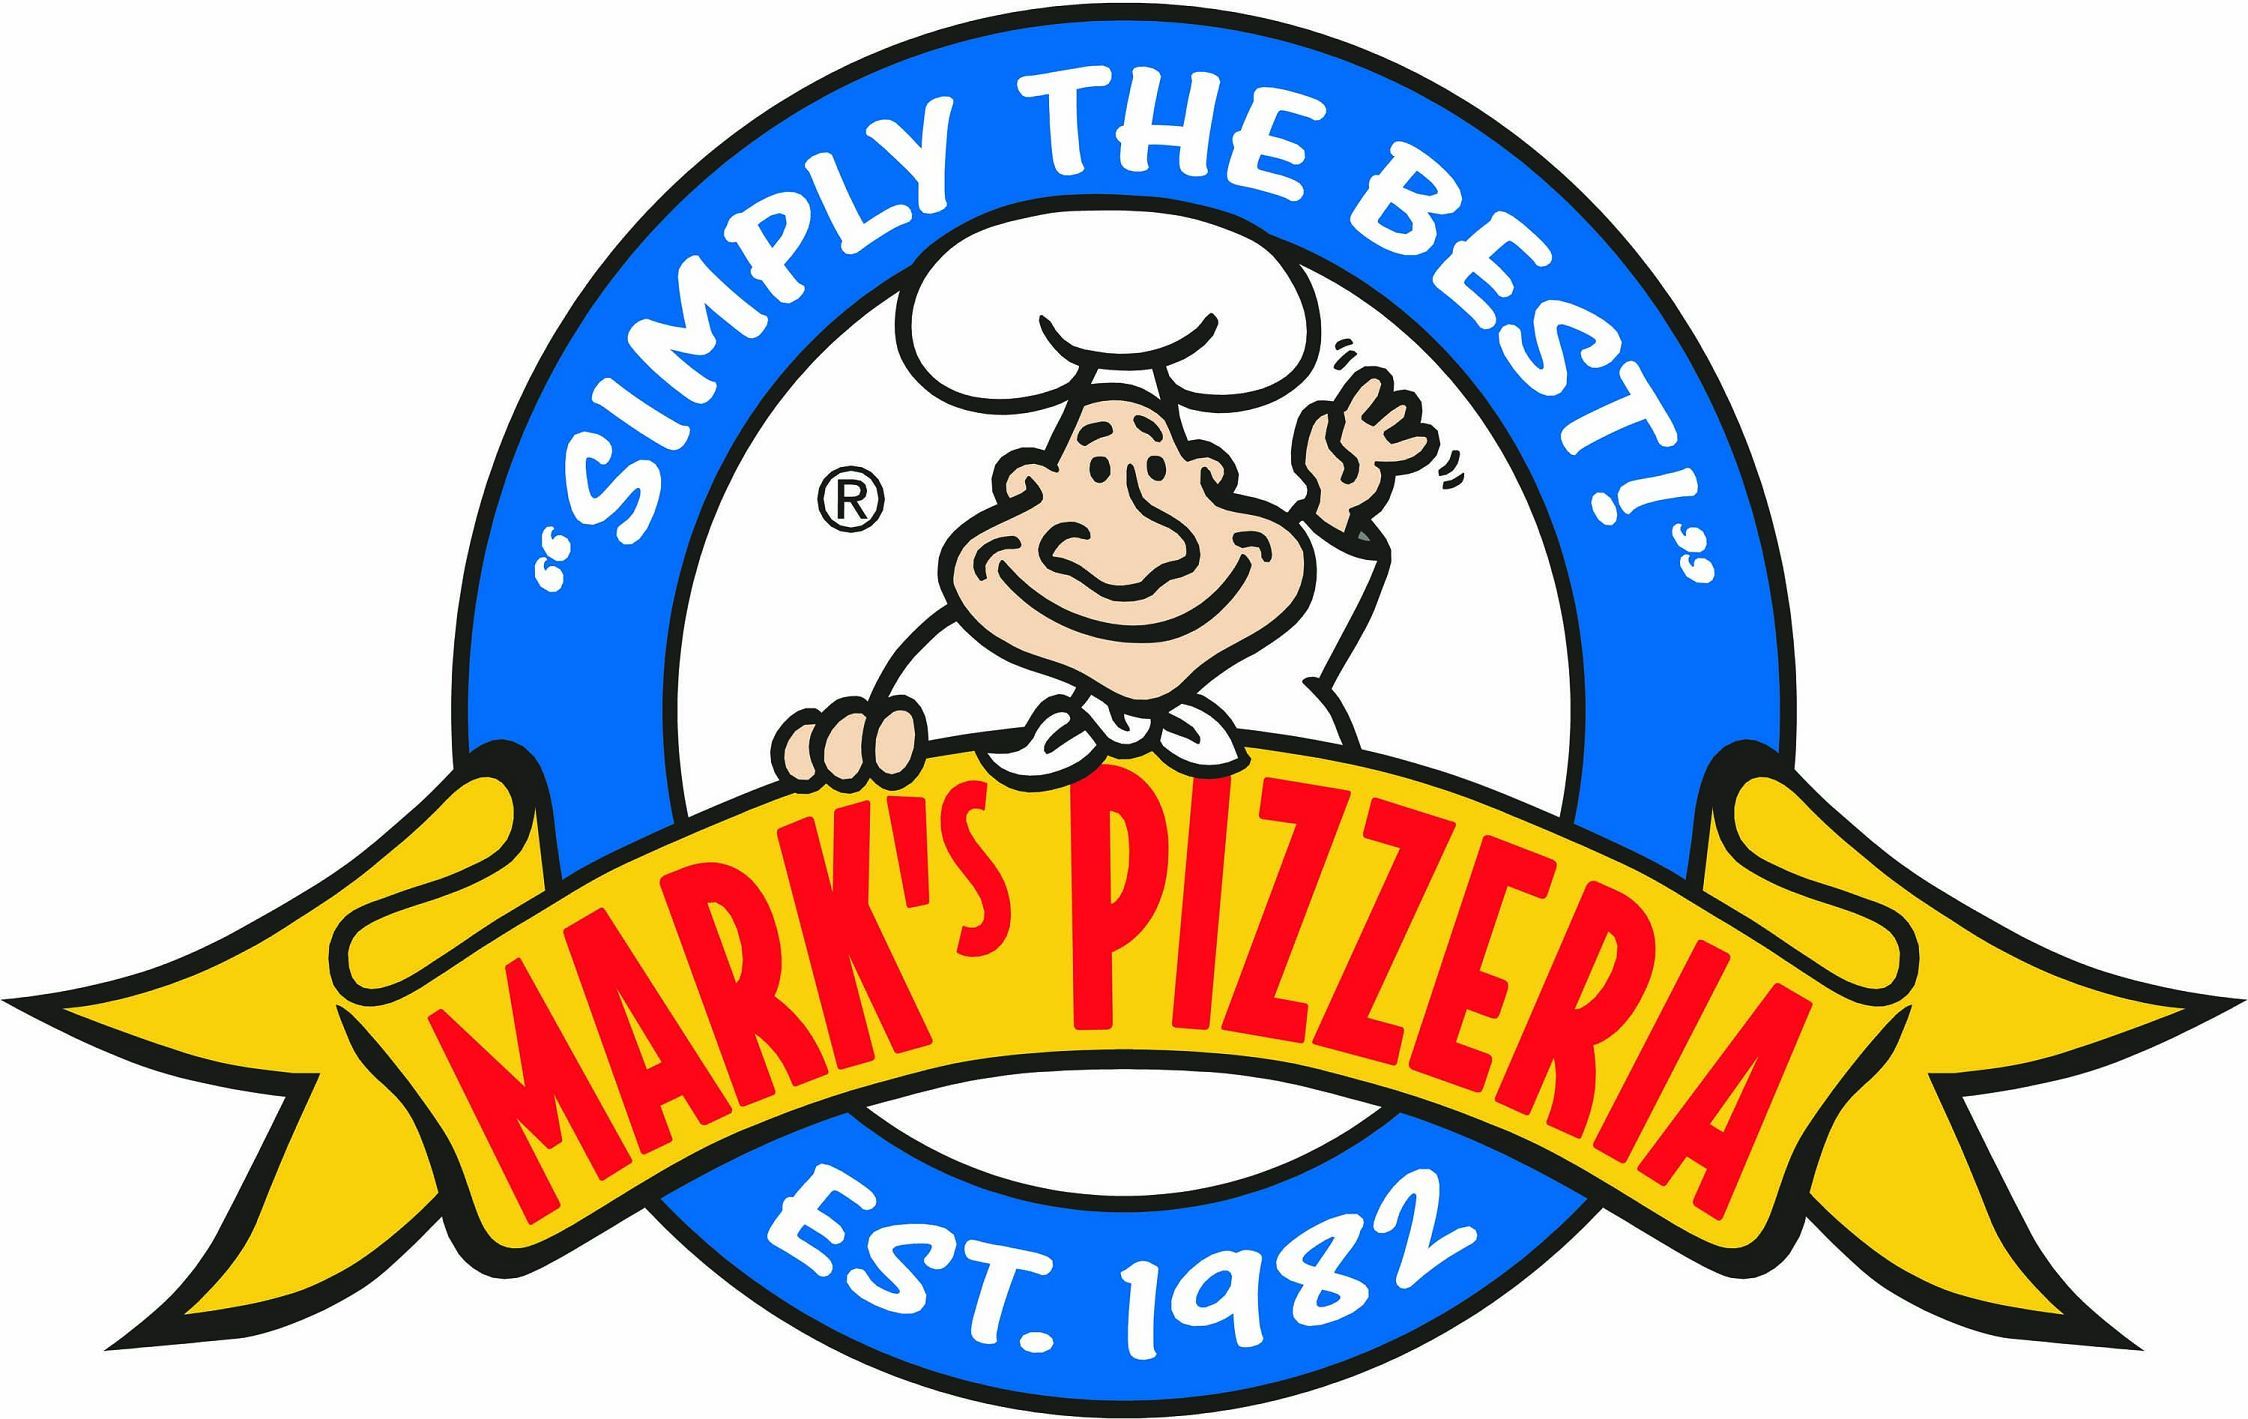 Mark's Pizzeria logo.jpg